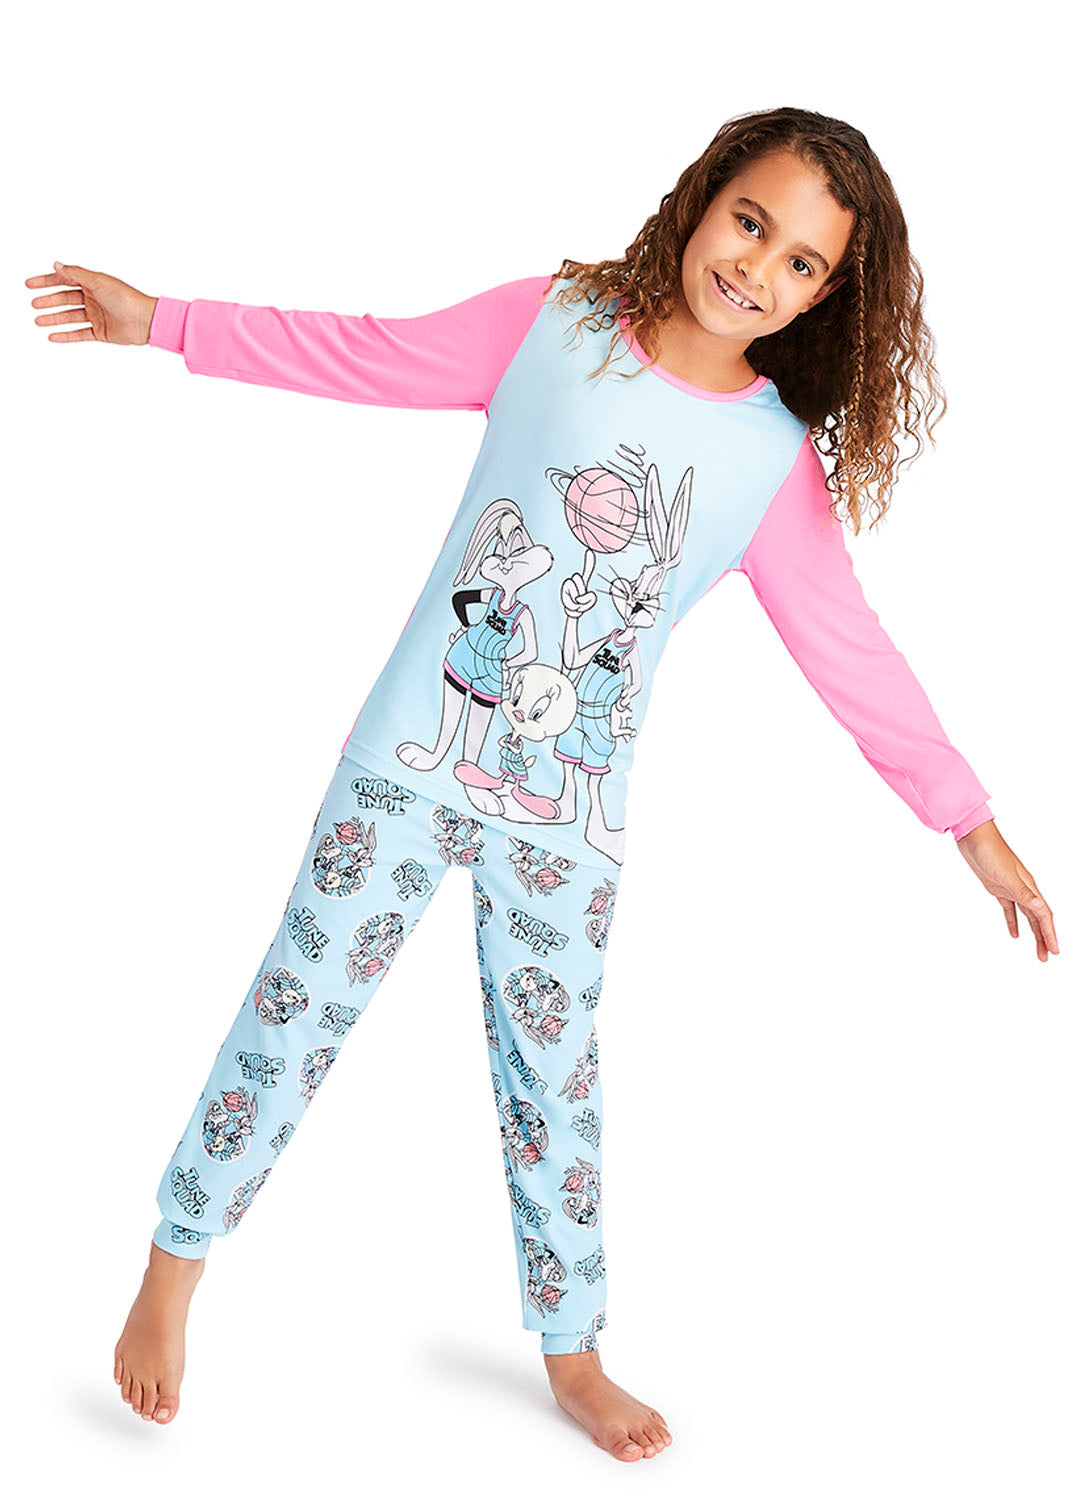 Fun Girl wearing Space Jam 2 Pajama Set